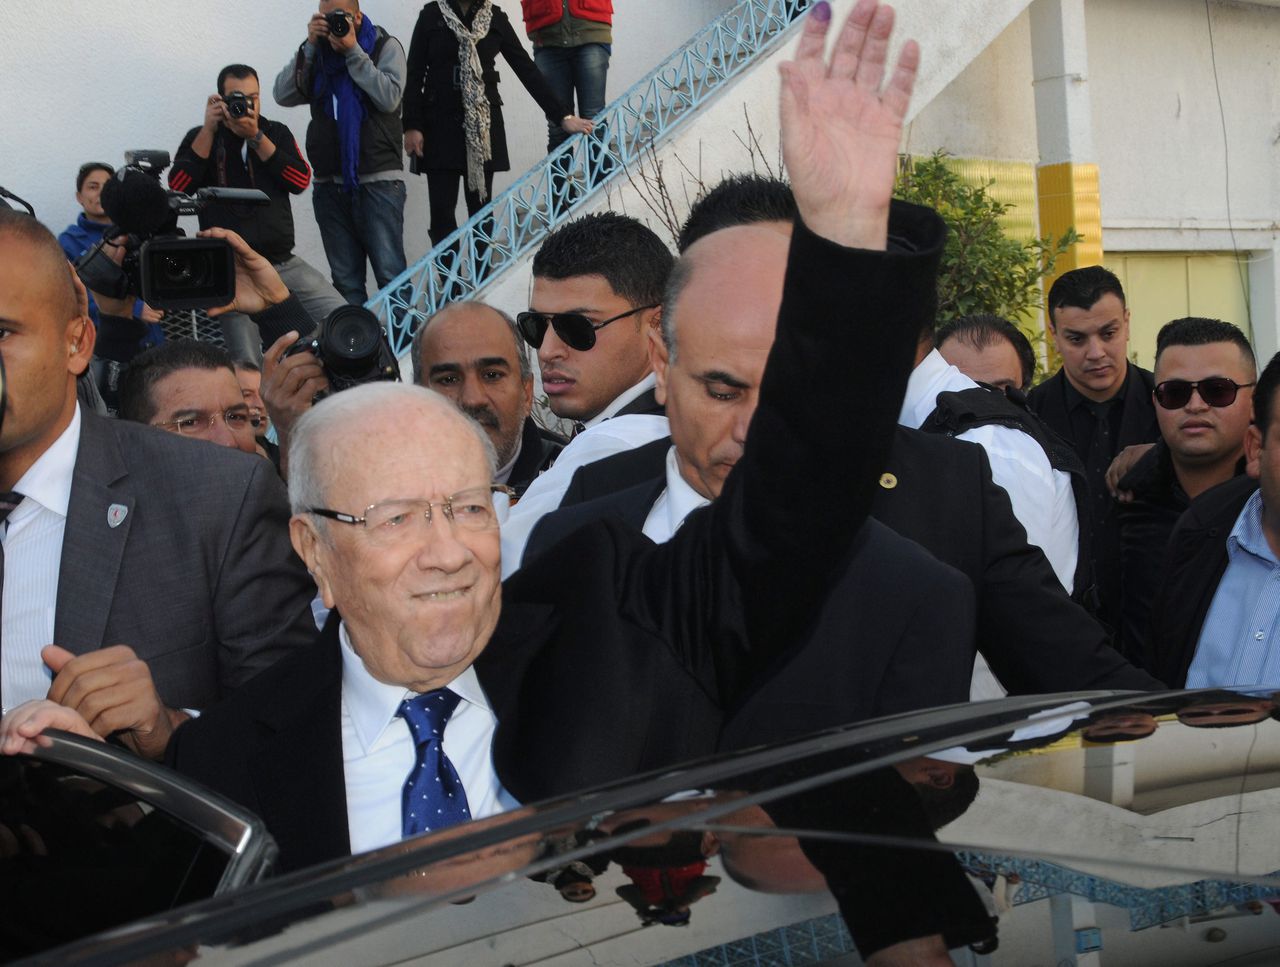 De nieuw verkozen president Essebsi tijdens de verkiezingscampagne.